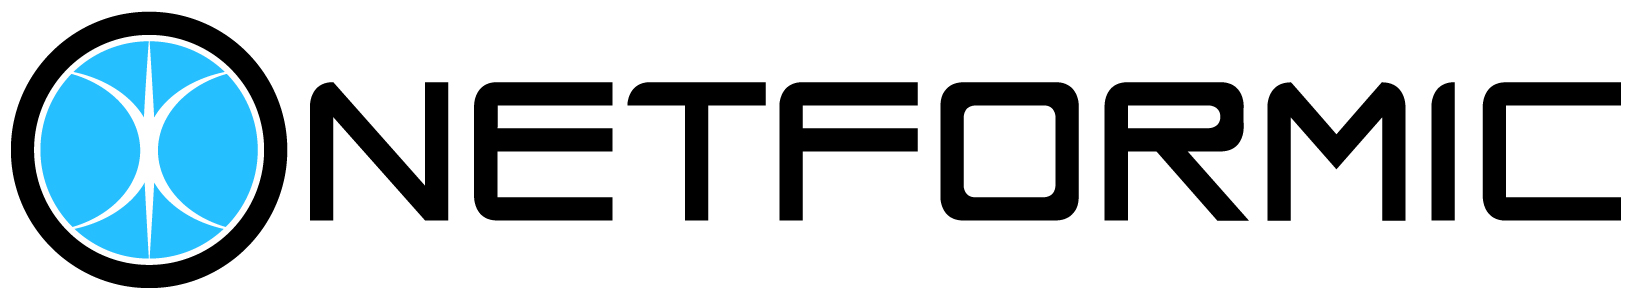 NETFORMIC-Logo-CMYK-1631x300